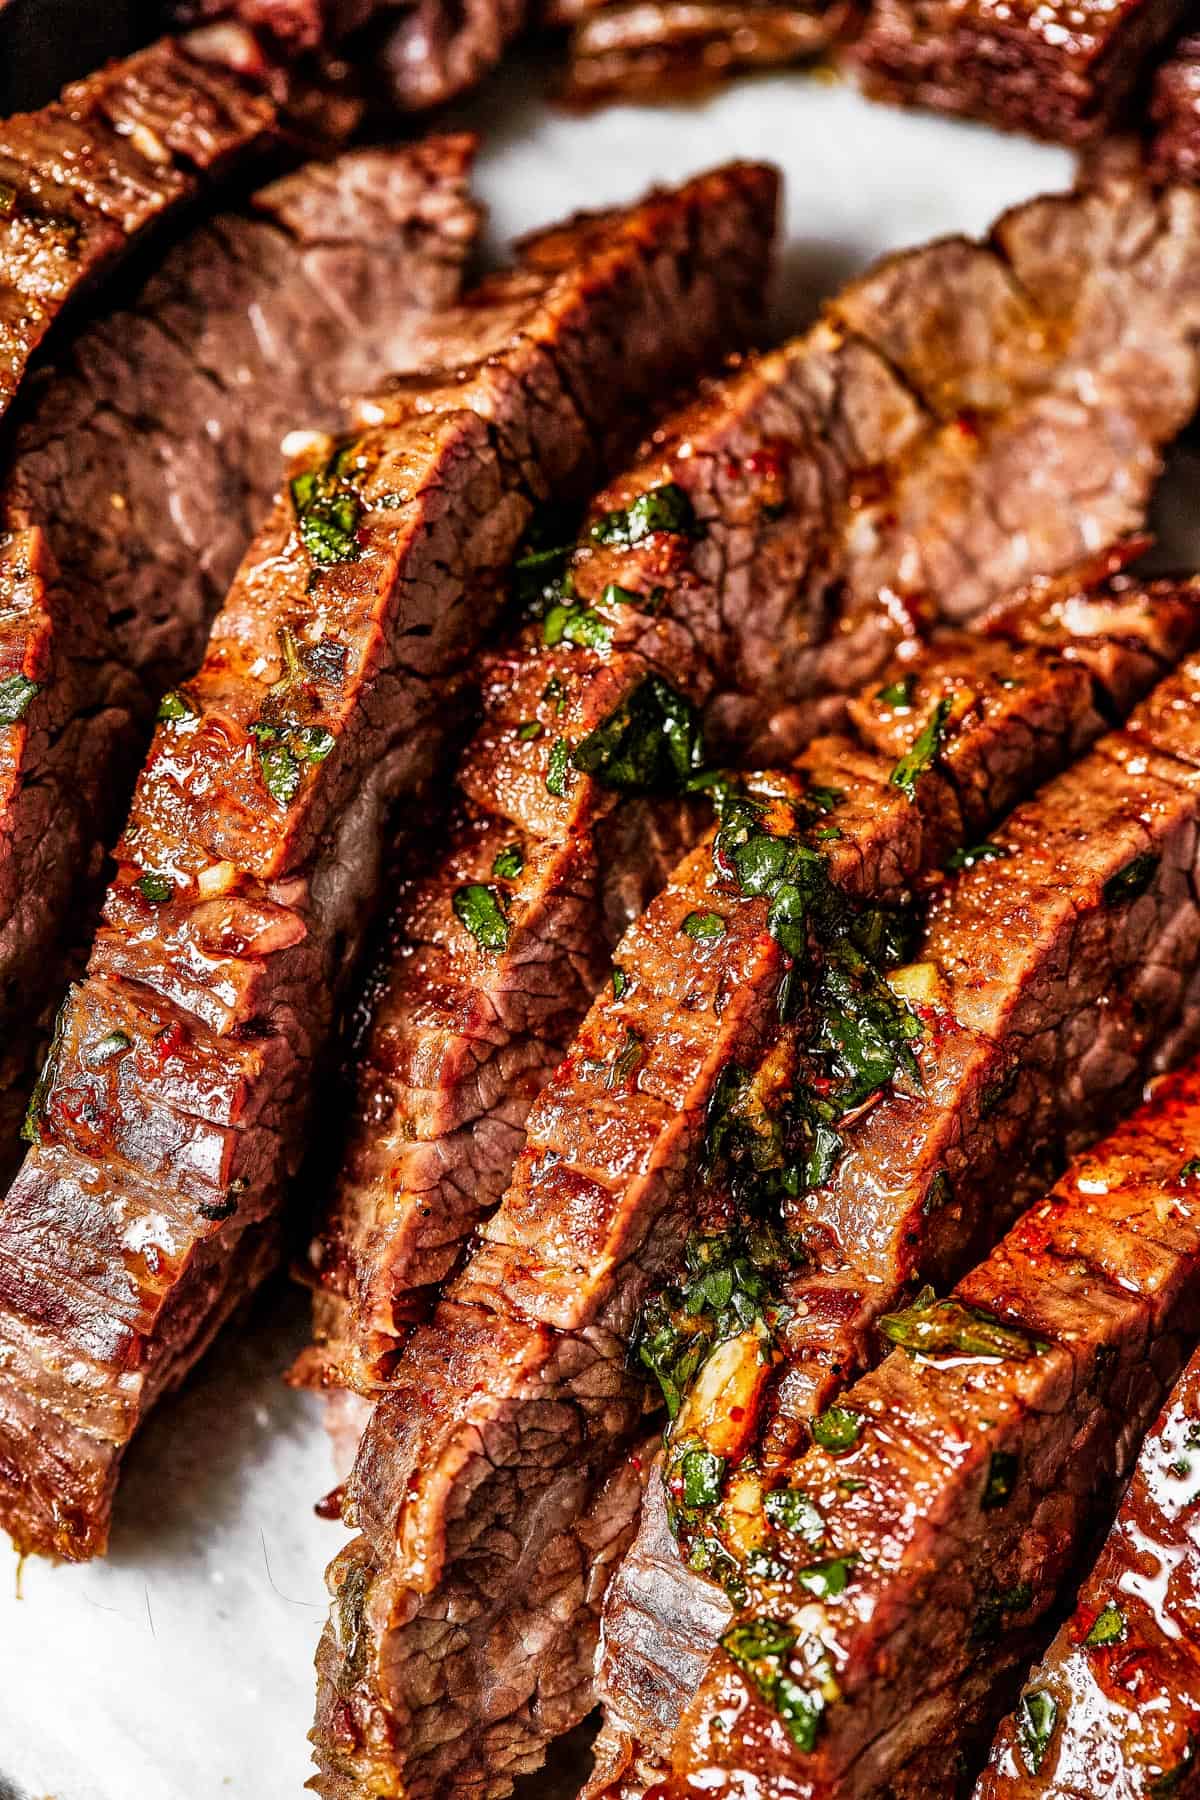 Close-up shot of sliced steak.